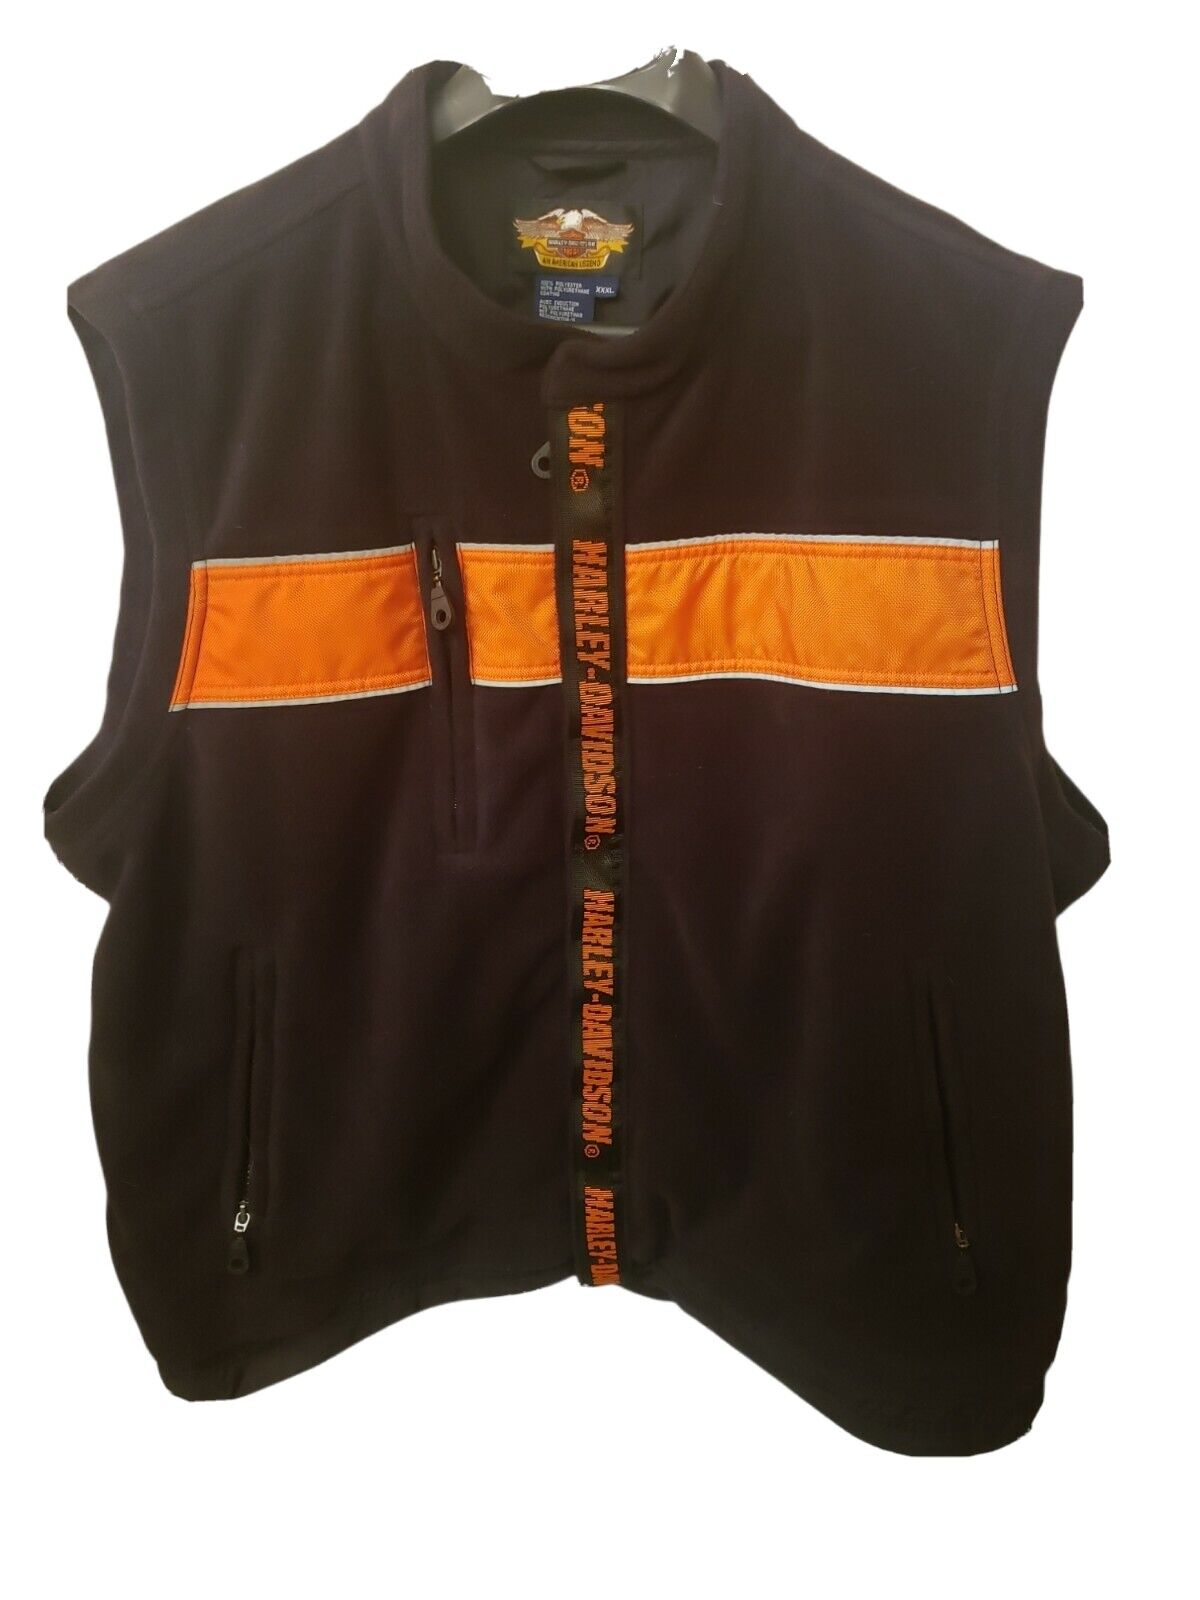 Harley Davidson Riders Safety Hi-vis Reflective Vest Black/orange Size 3xl